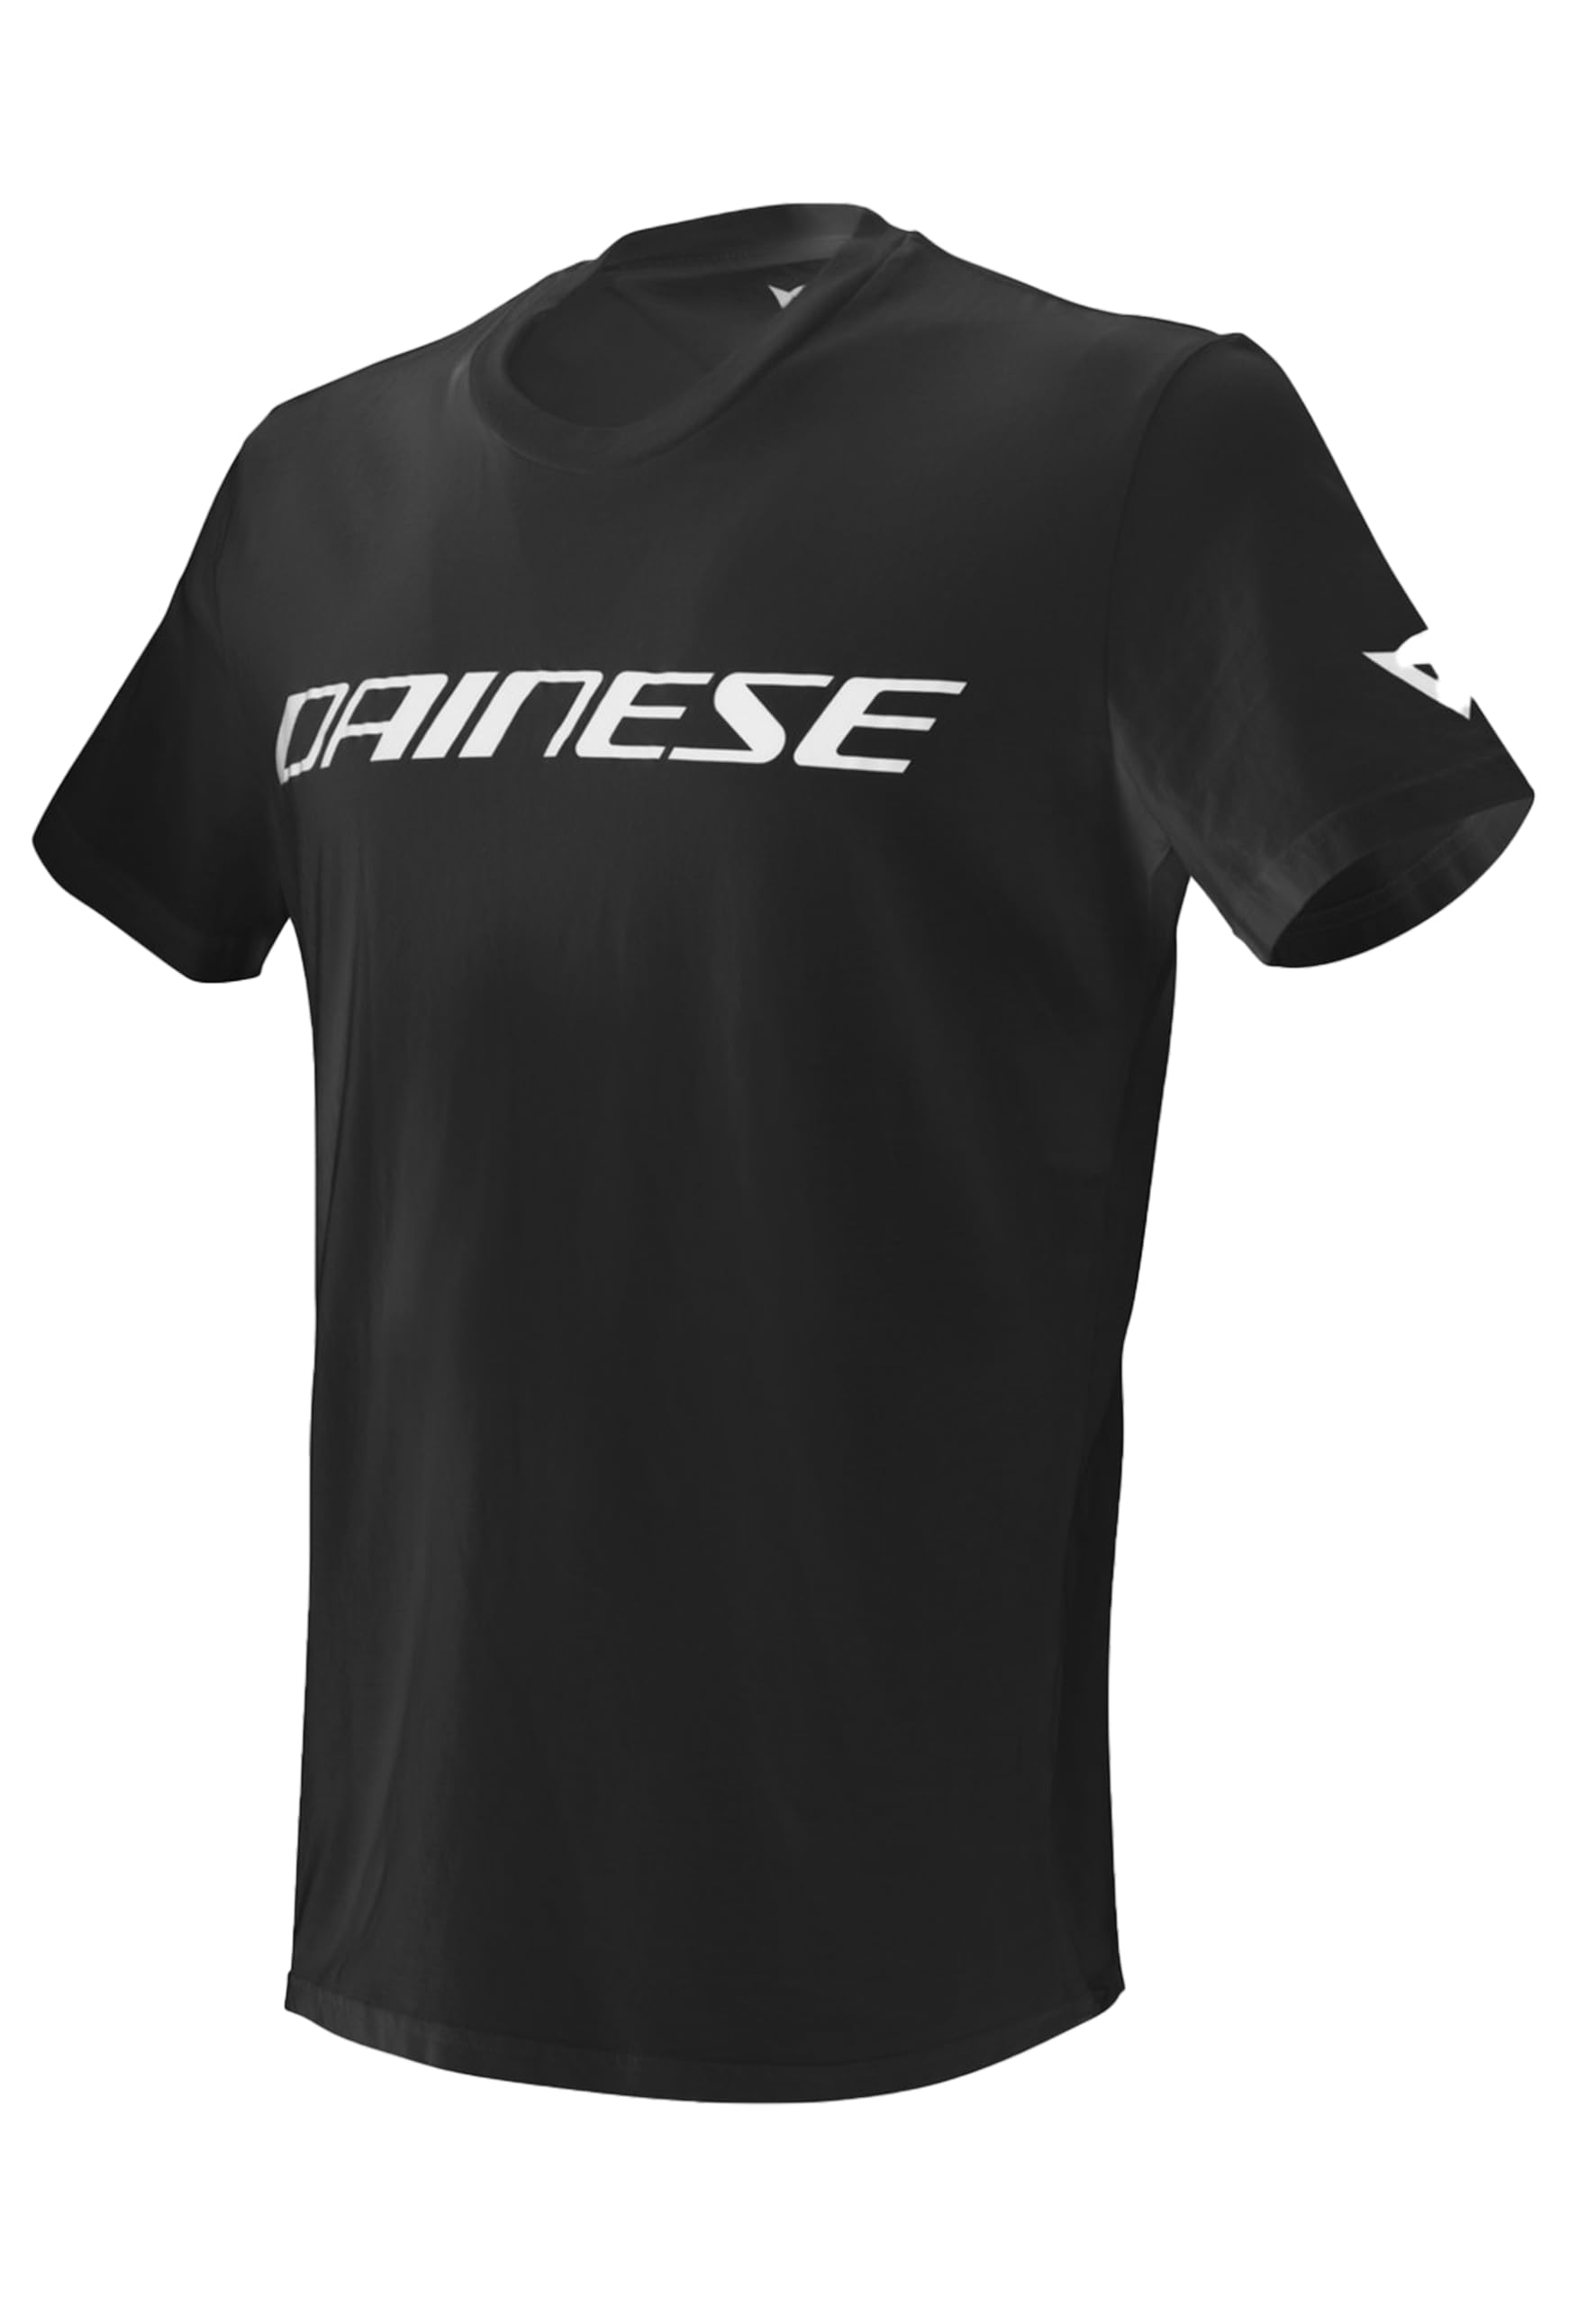 Dainese Unisex Erwachsene Dainese T-shirt T shirt, Schwarz/Weiss, 3XL EU von Dainese